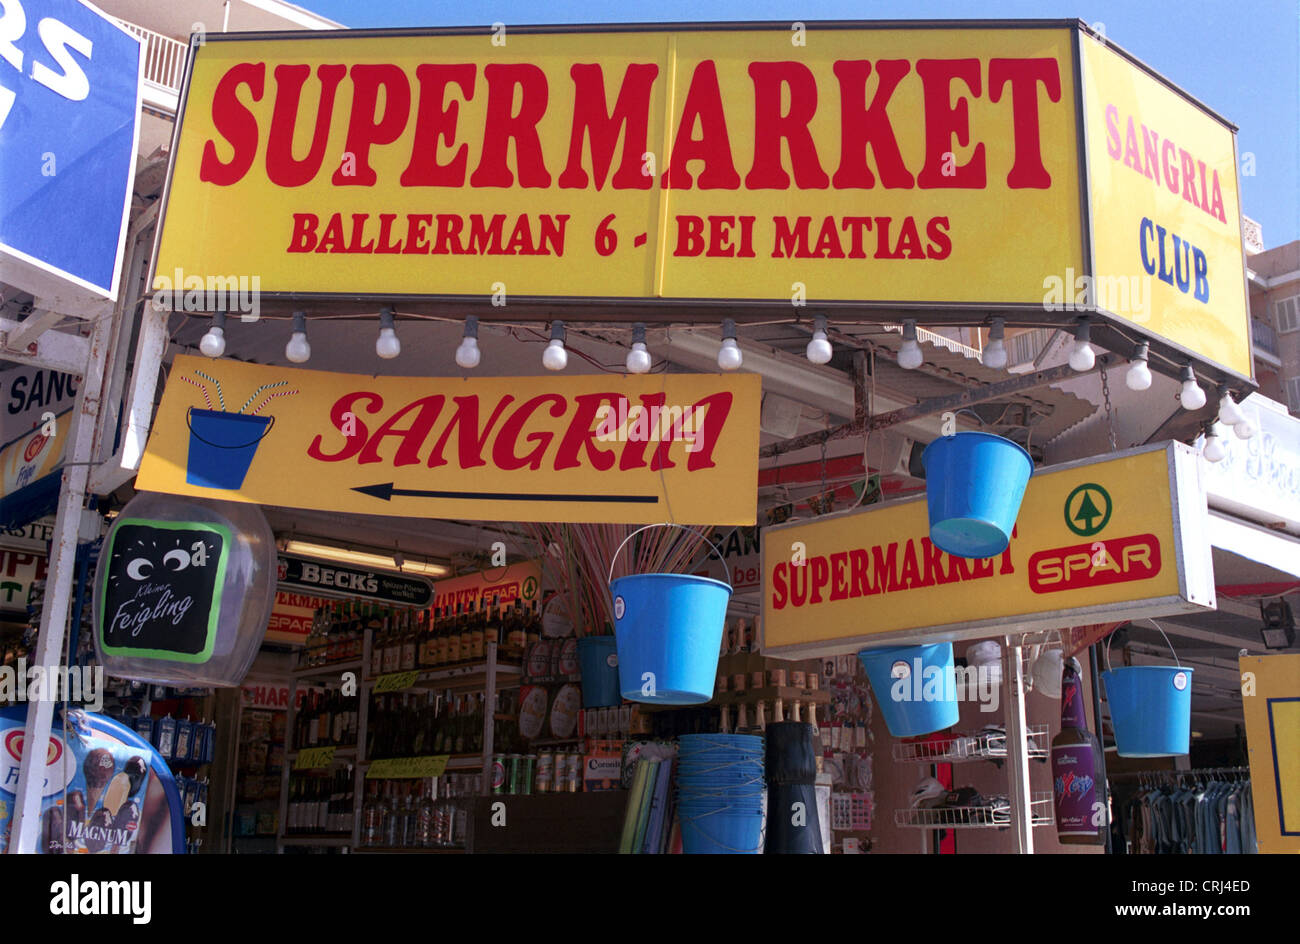 Supermarket on Ballermann Mallorca Stock Photo